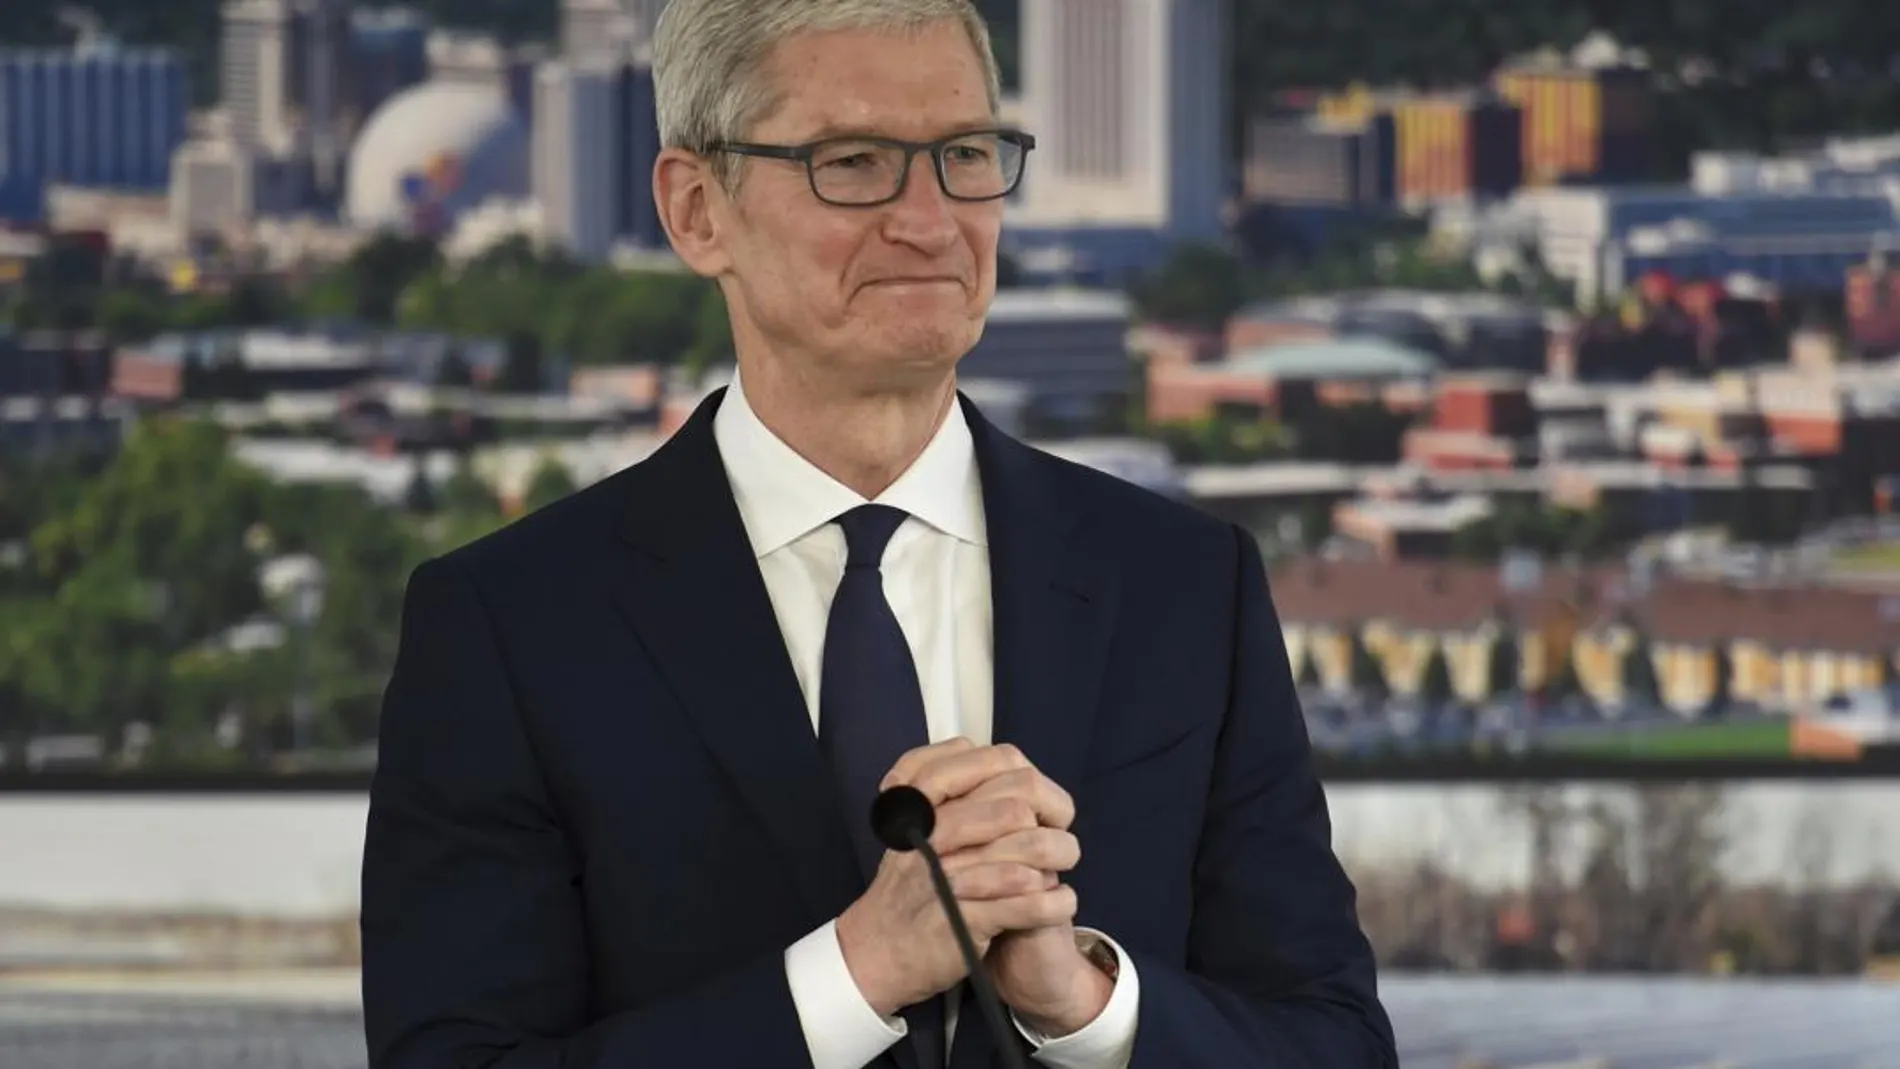 Tim Cook, consejero delegado de Apple, en un acto público el pasado miércoles